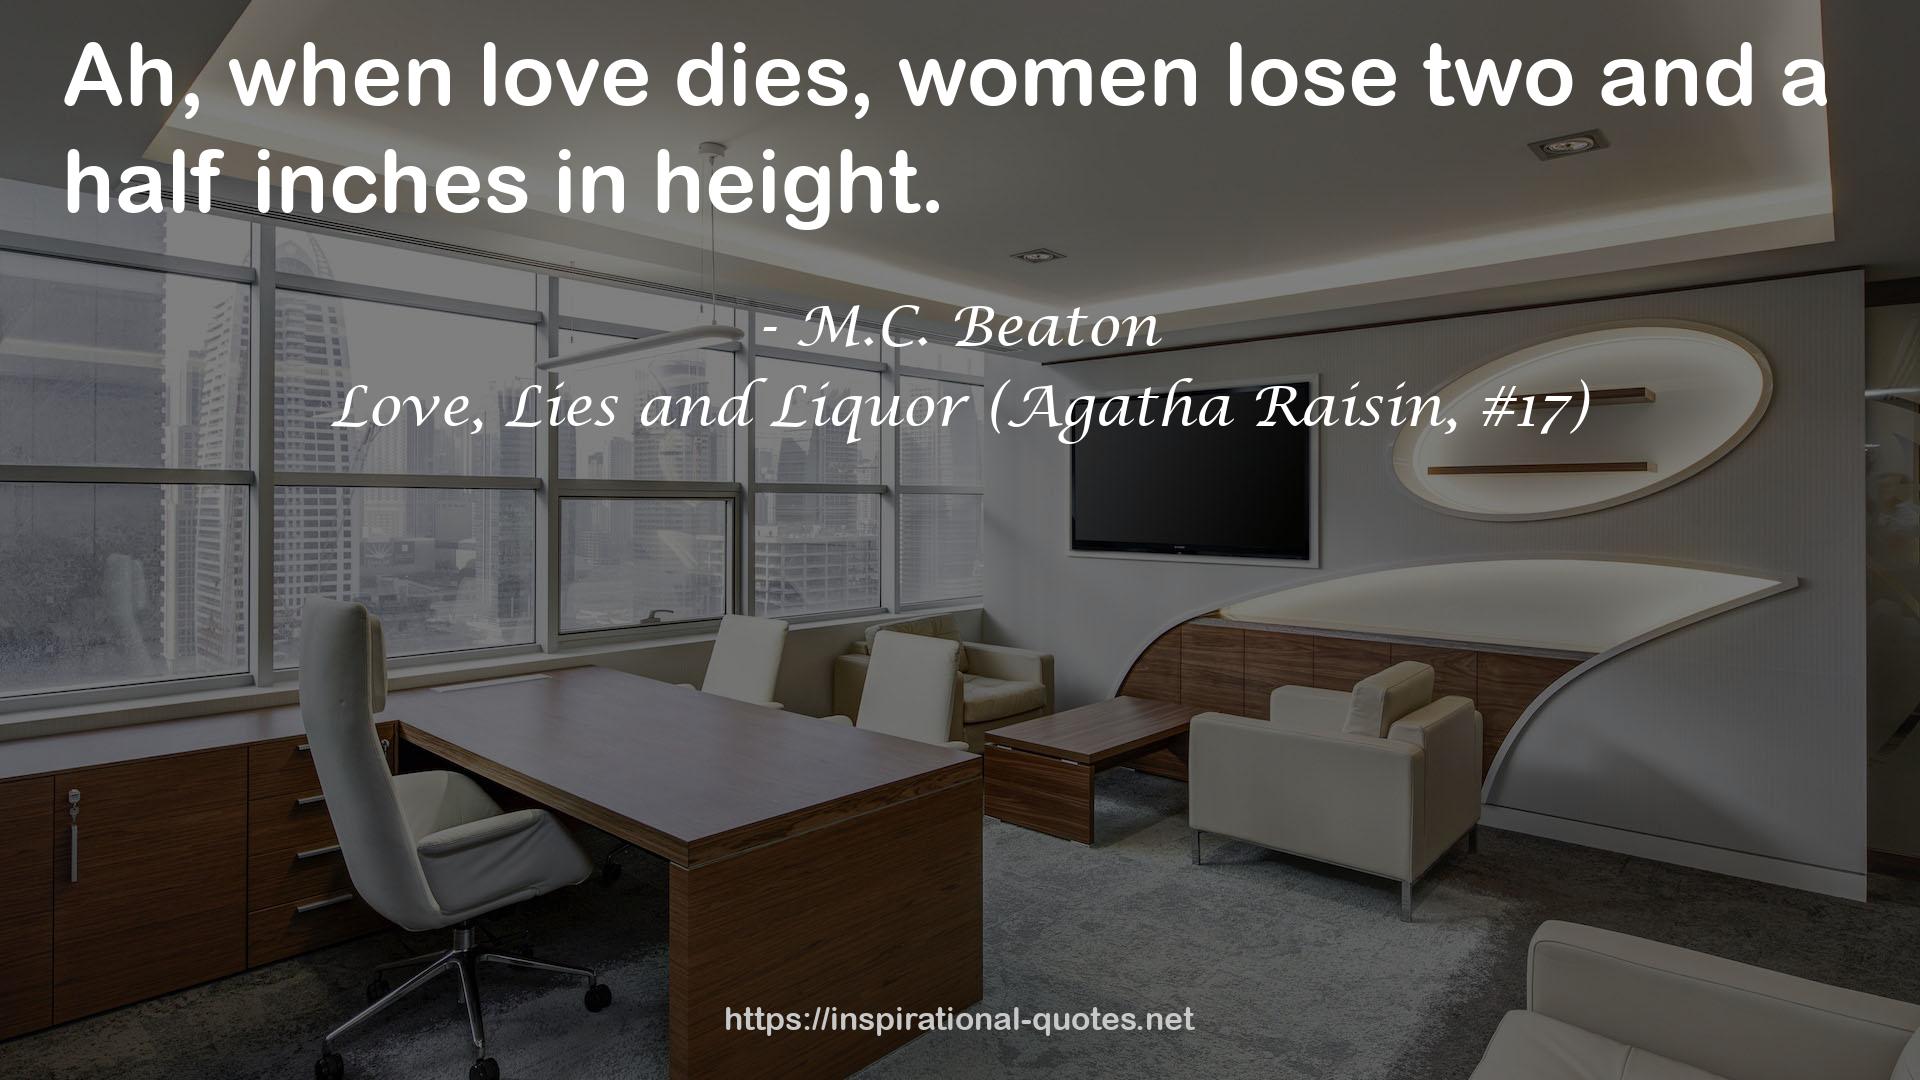 Love, Lies and Liquor (Agatha Raisin, #17) QUOTES